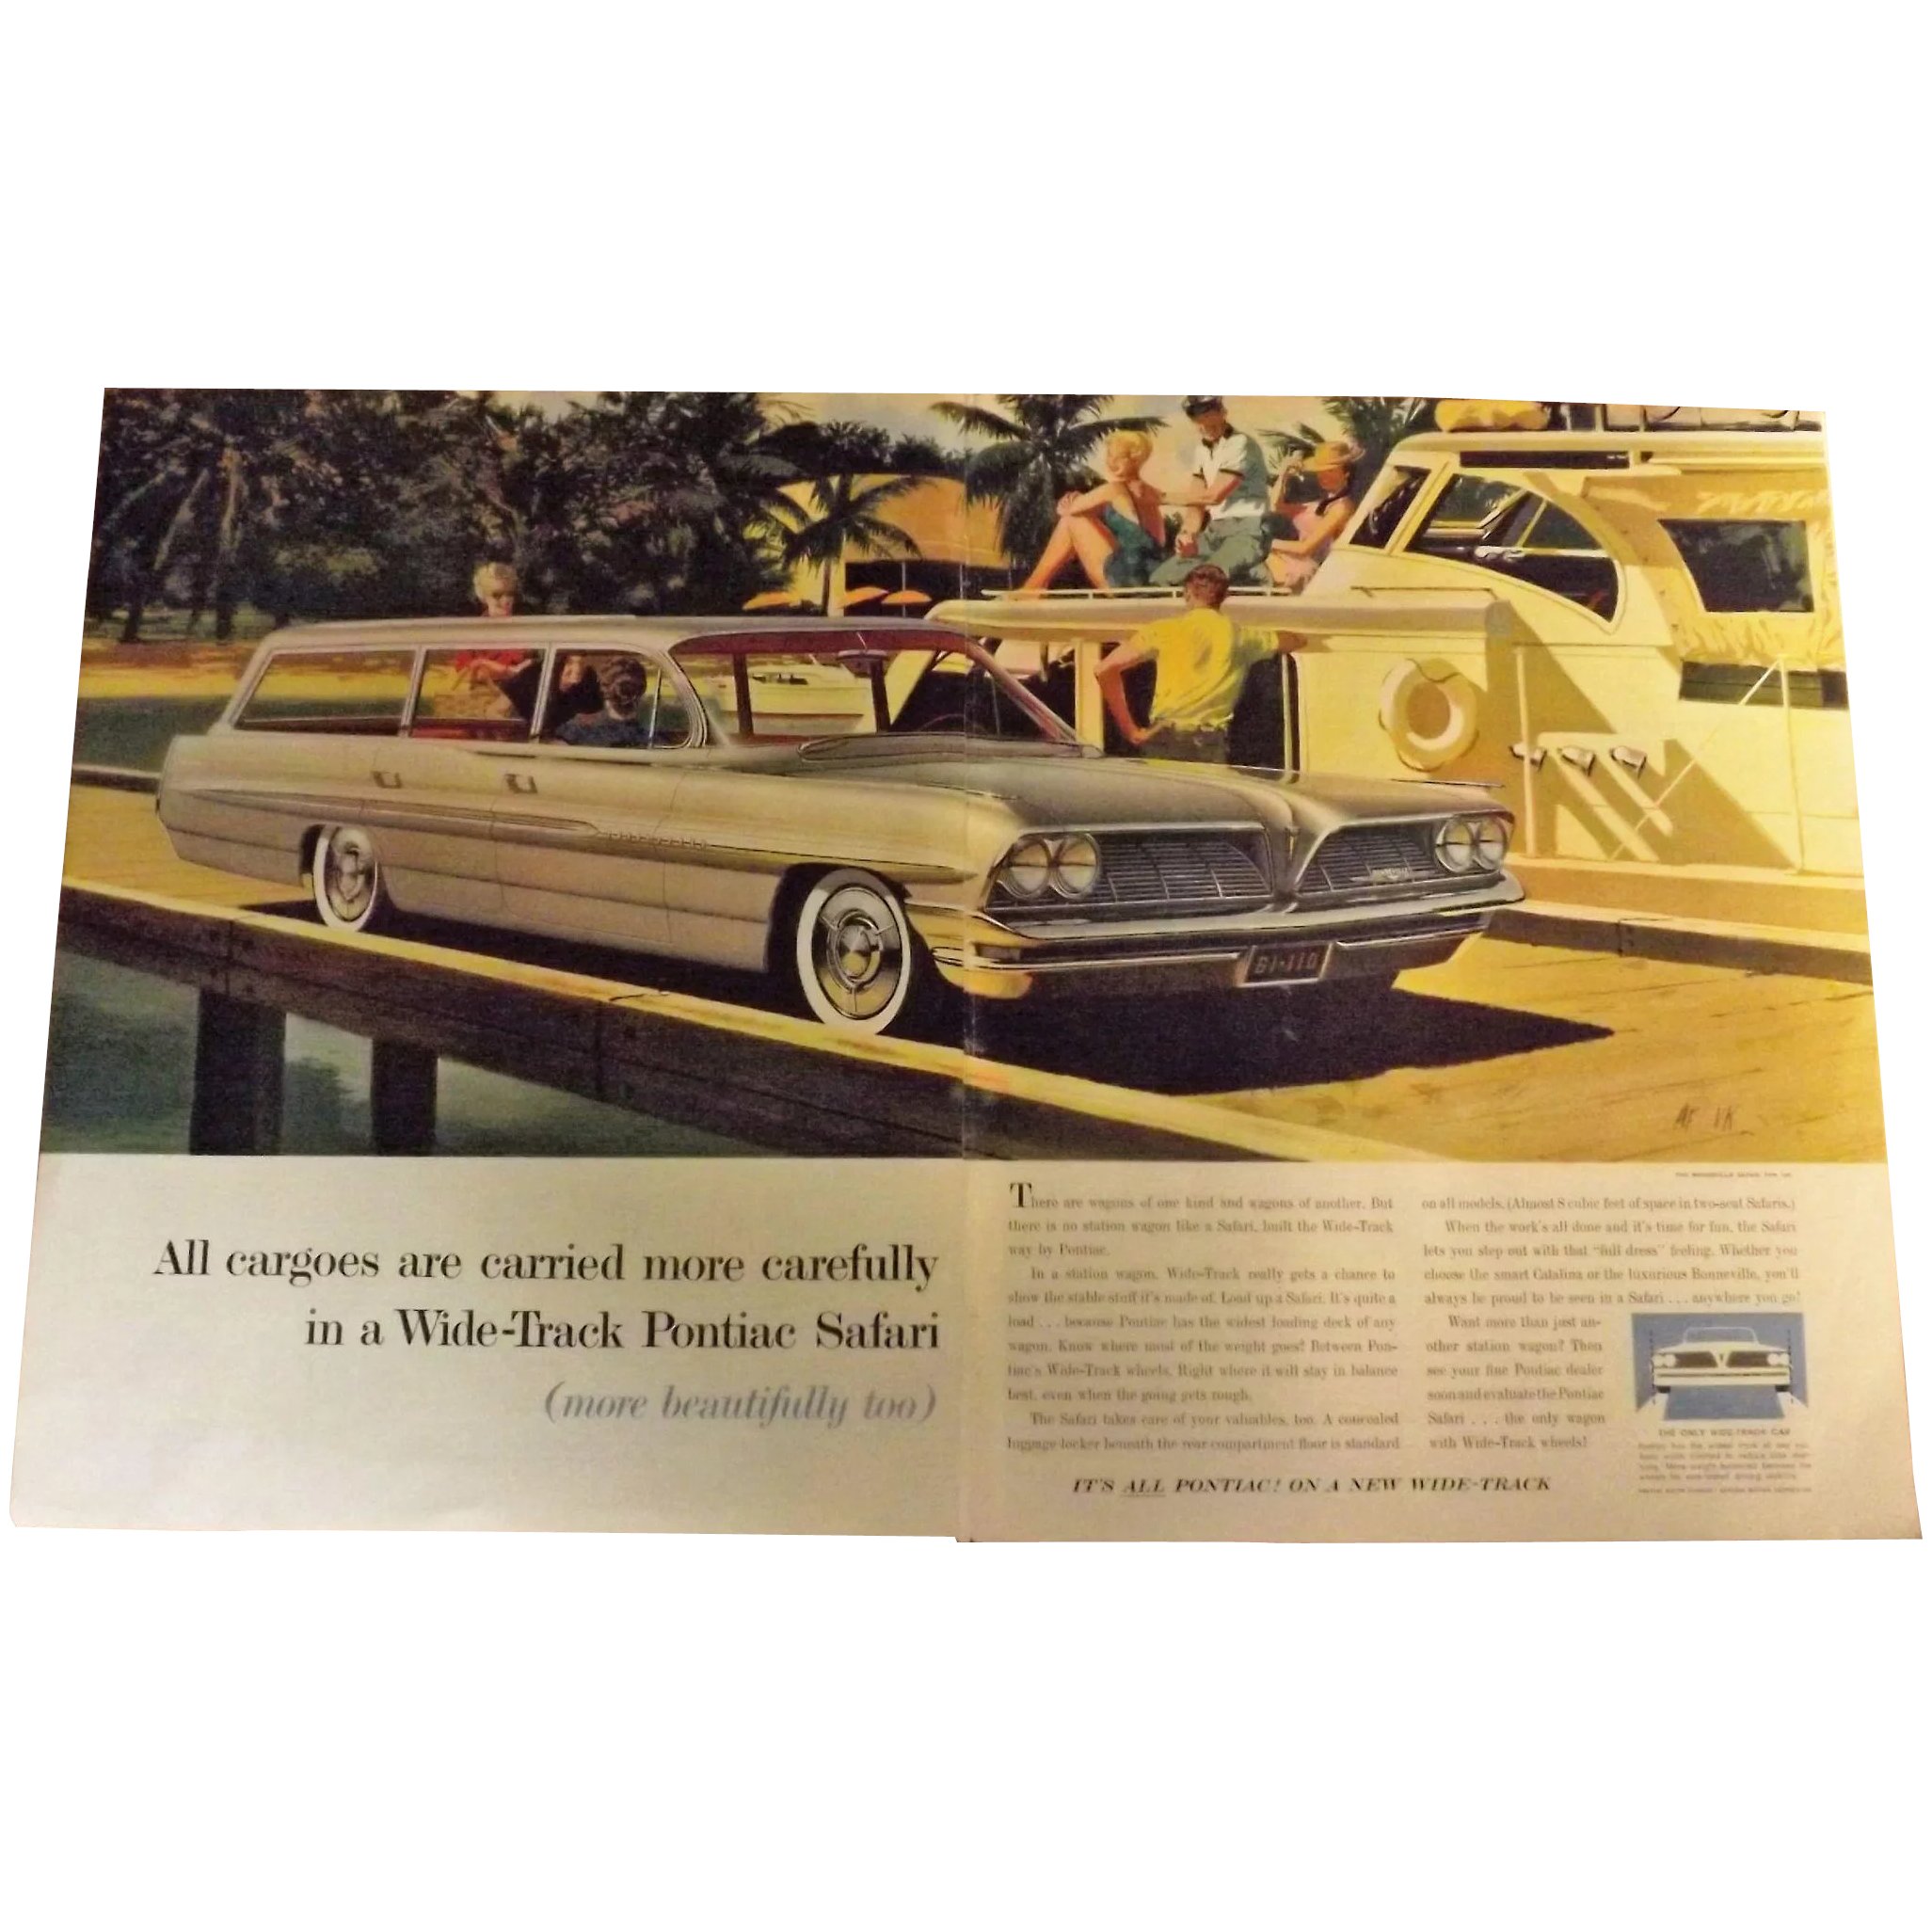 Pontiac Bonneville Safari 1961 Large Double Page Advertisement